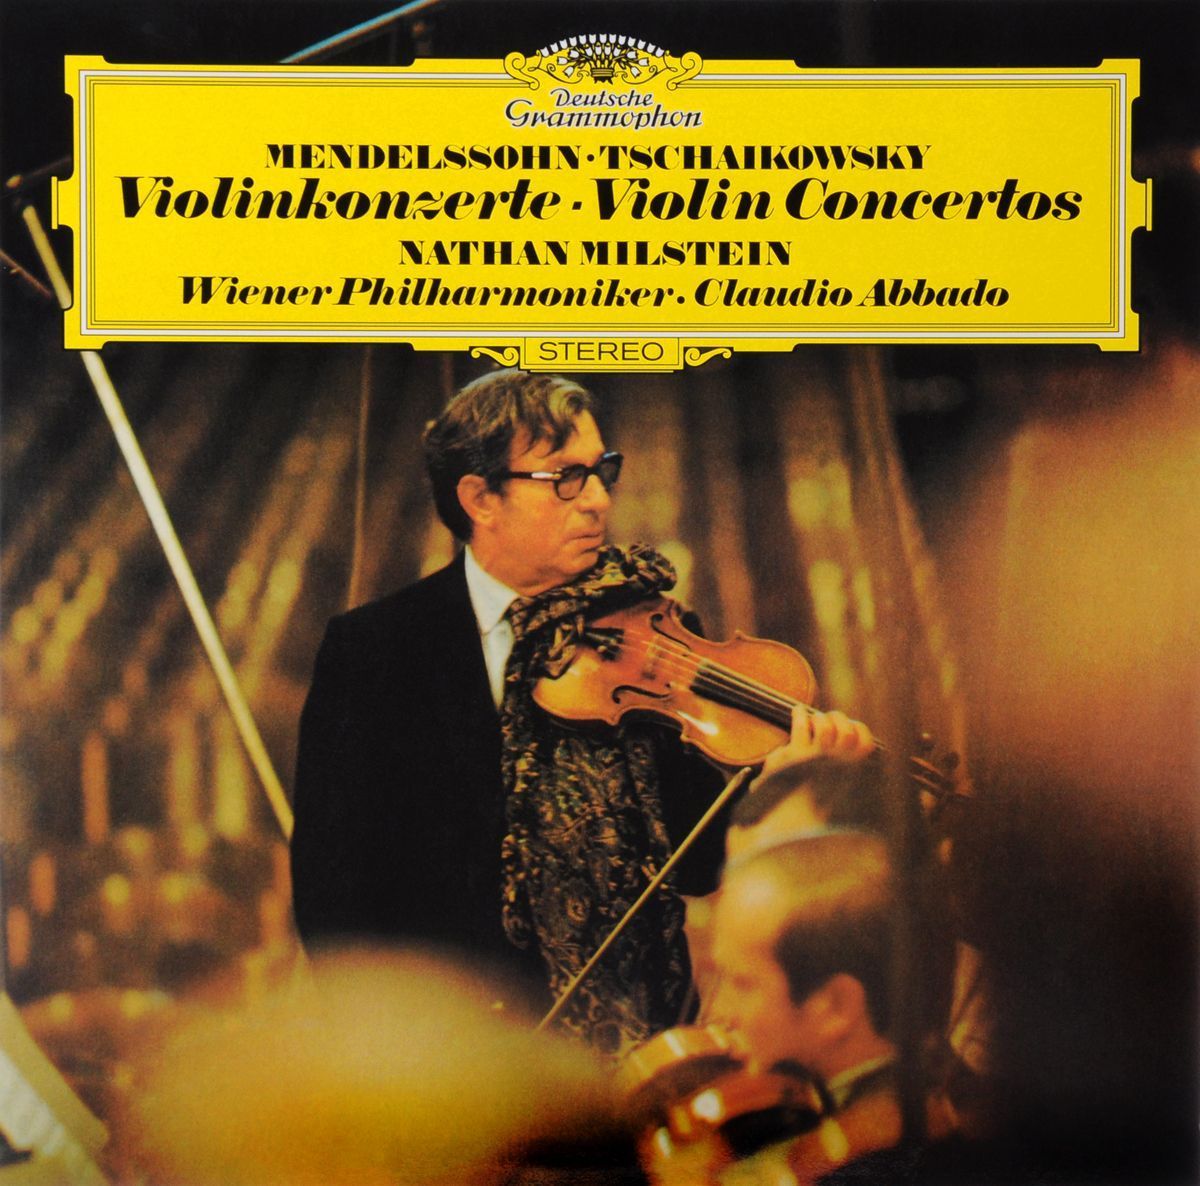 Mendelssohn, Tchaikovsky - Violinkonzerte Violin Concertos (Deutsche) (LP)